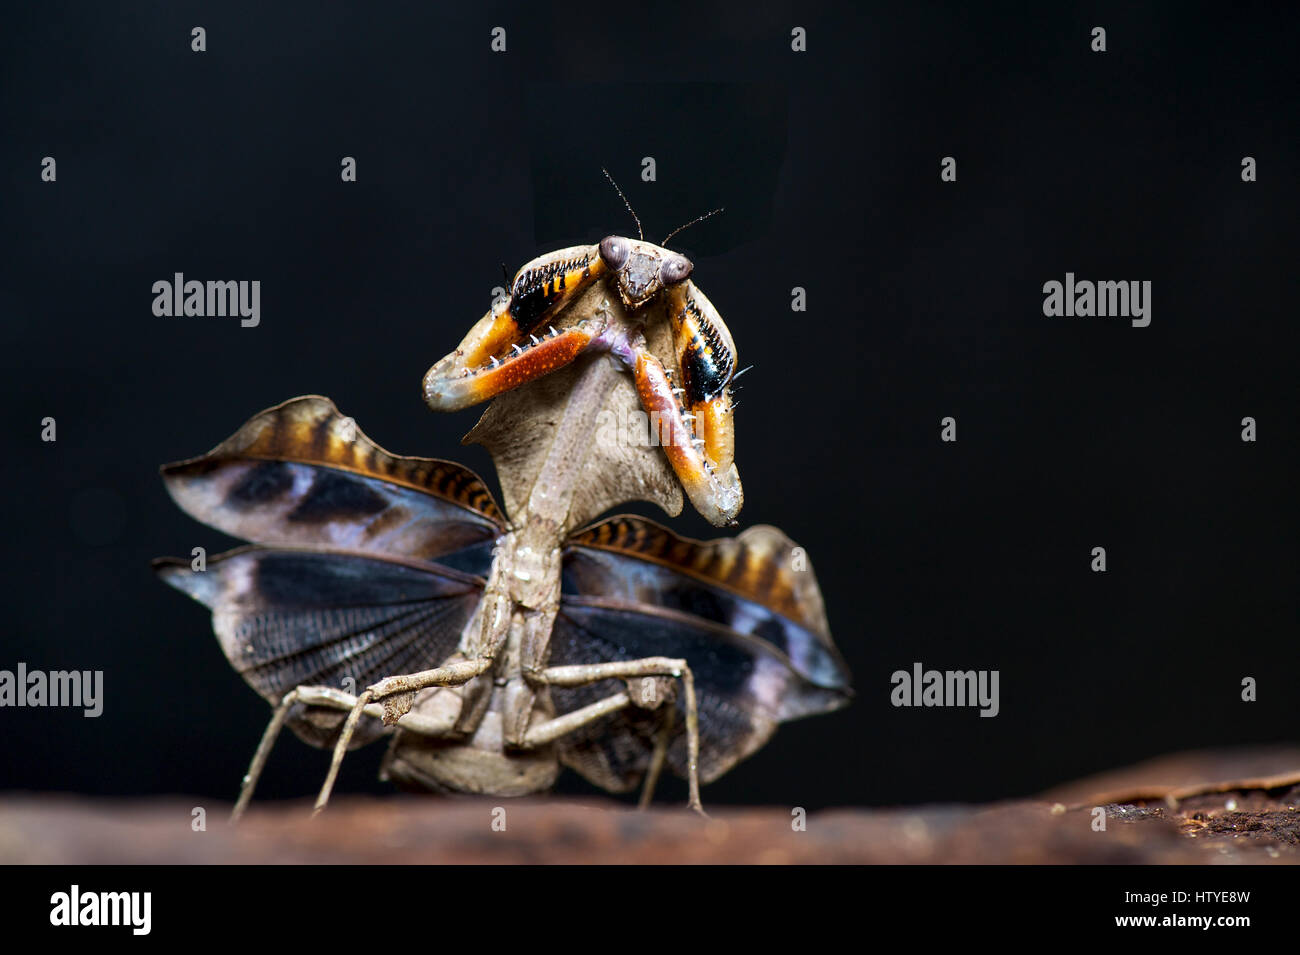 Portrait of a Praying Mantis, Teluk Bahang, Penang, Stock Photo